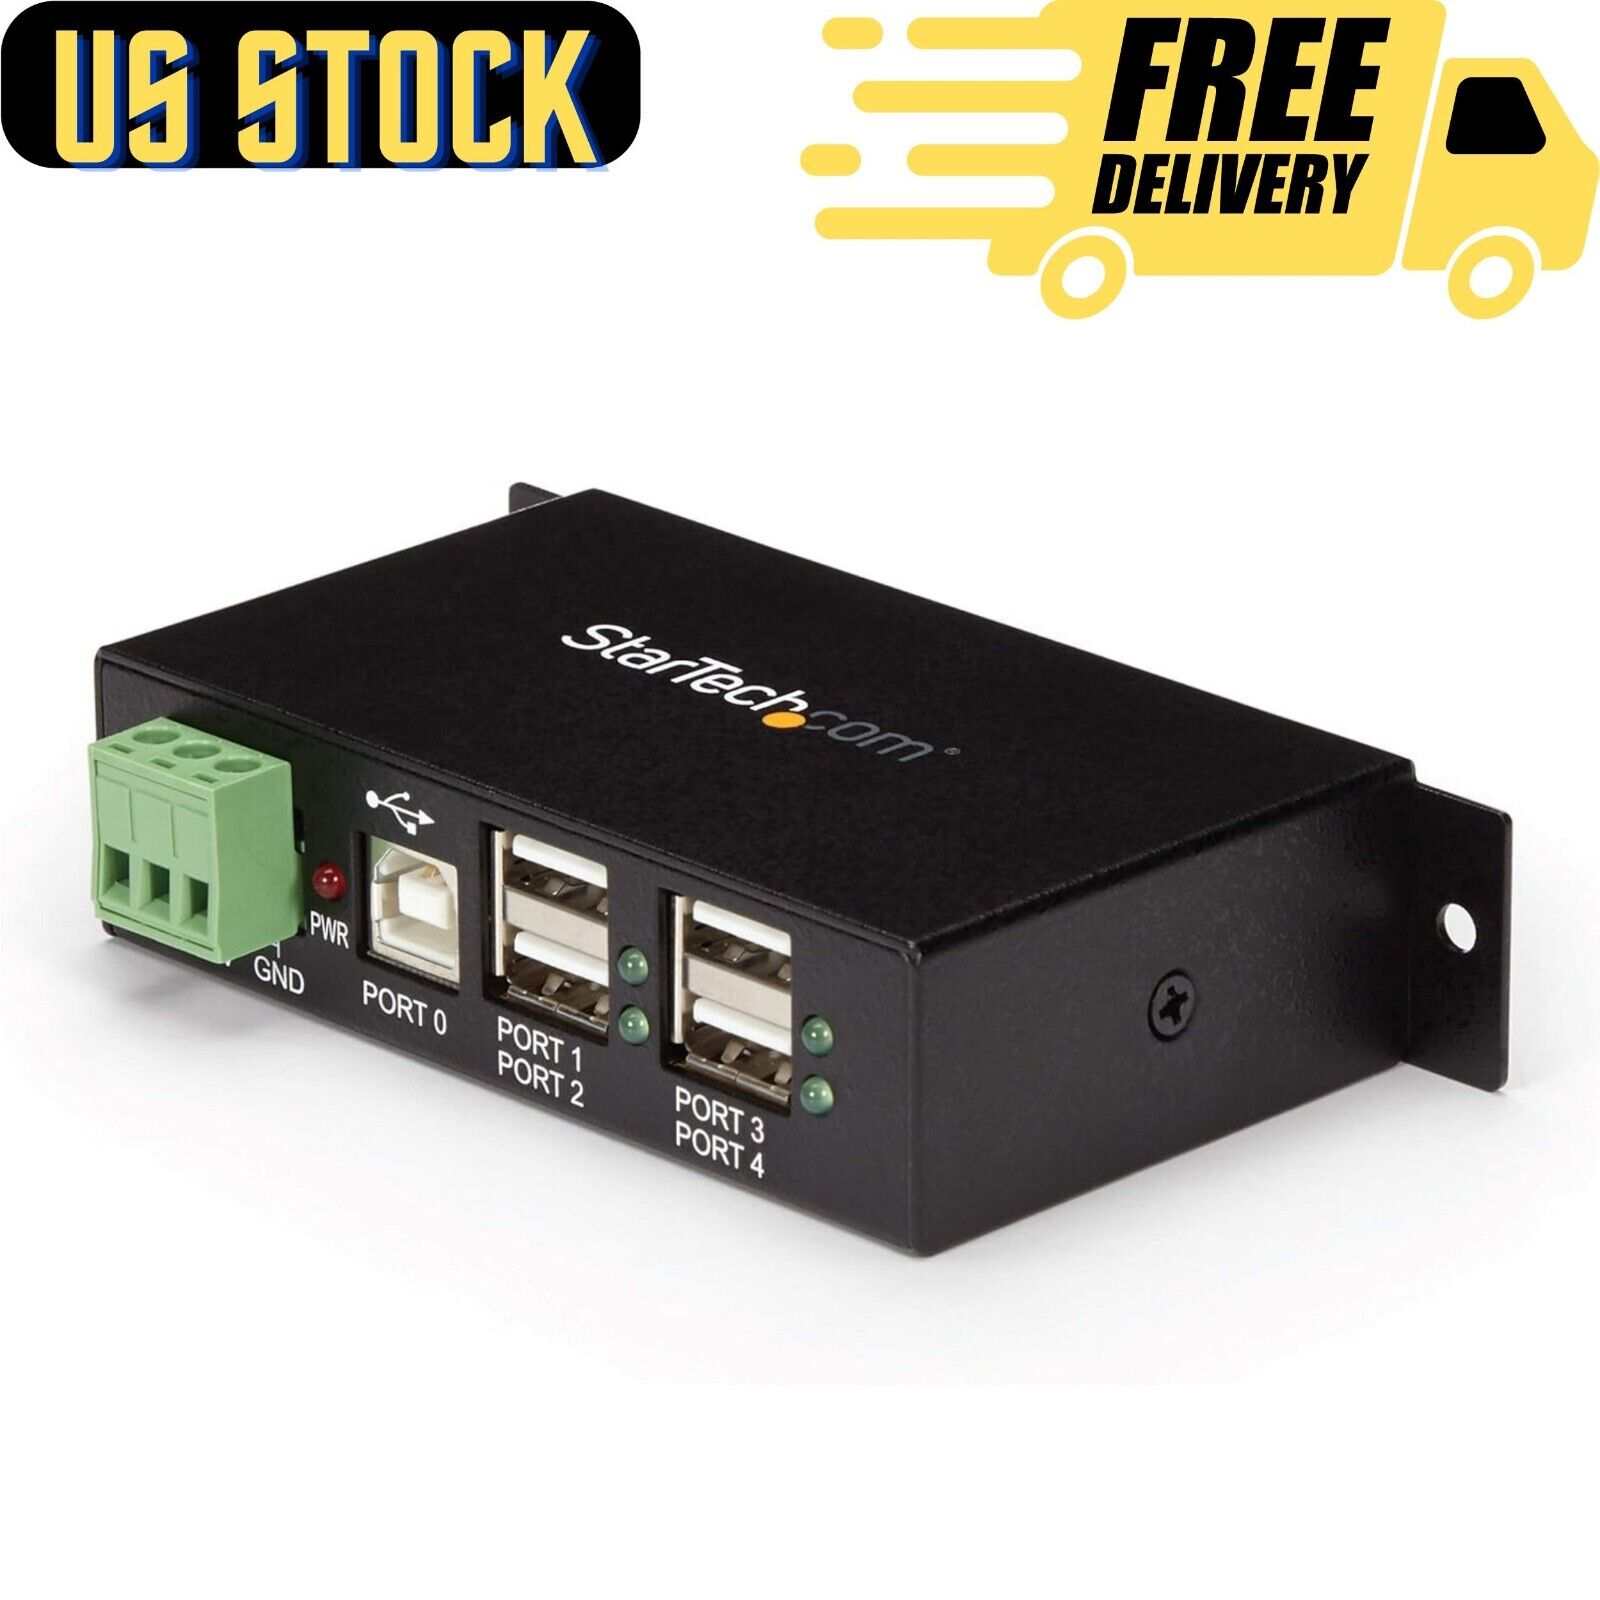 StarTech.com 4-Port USB 2.0 Hub - Metal Industrial USB-A Hub - Din Rail, Wall...